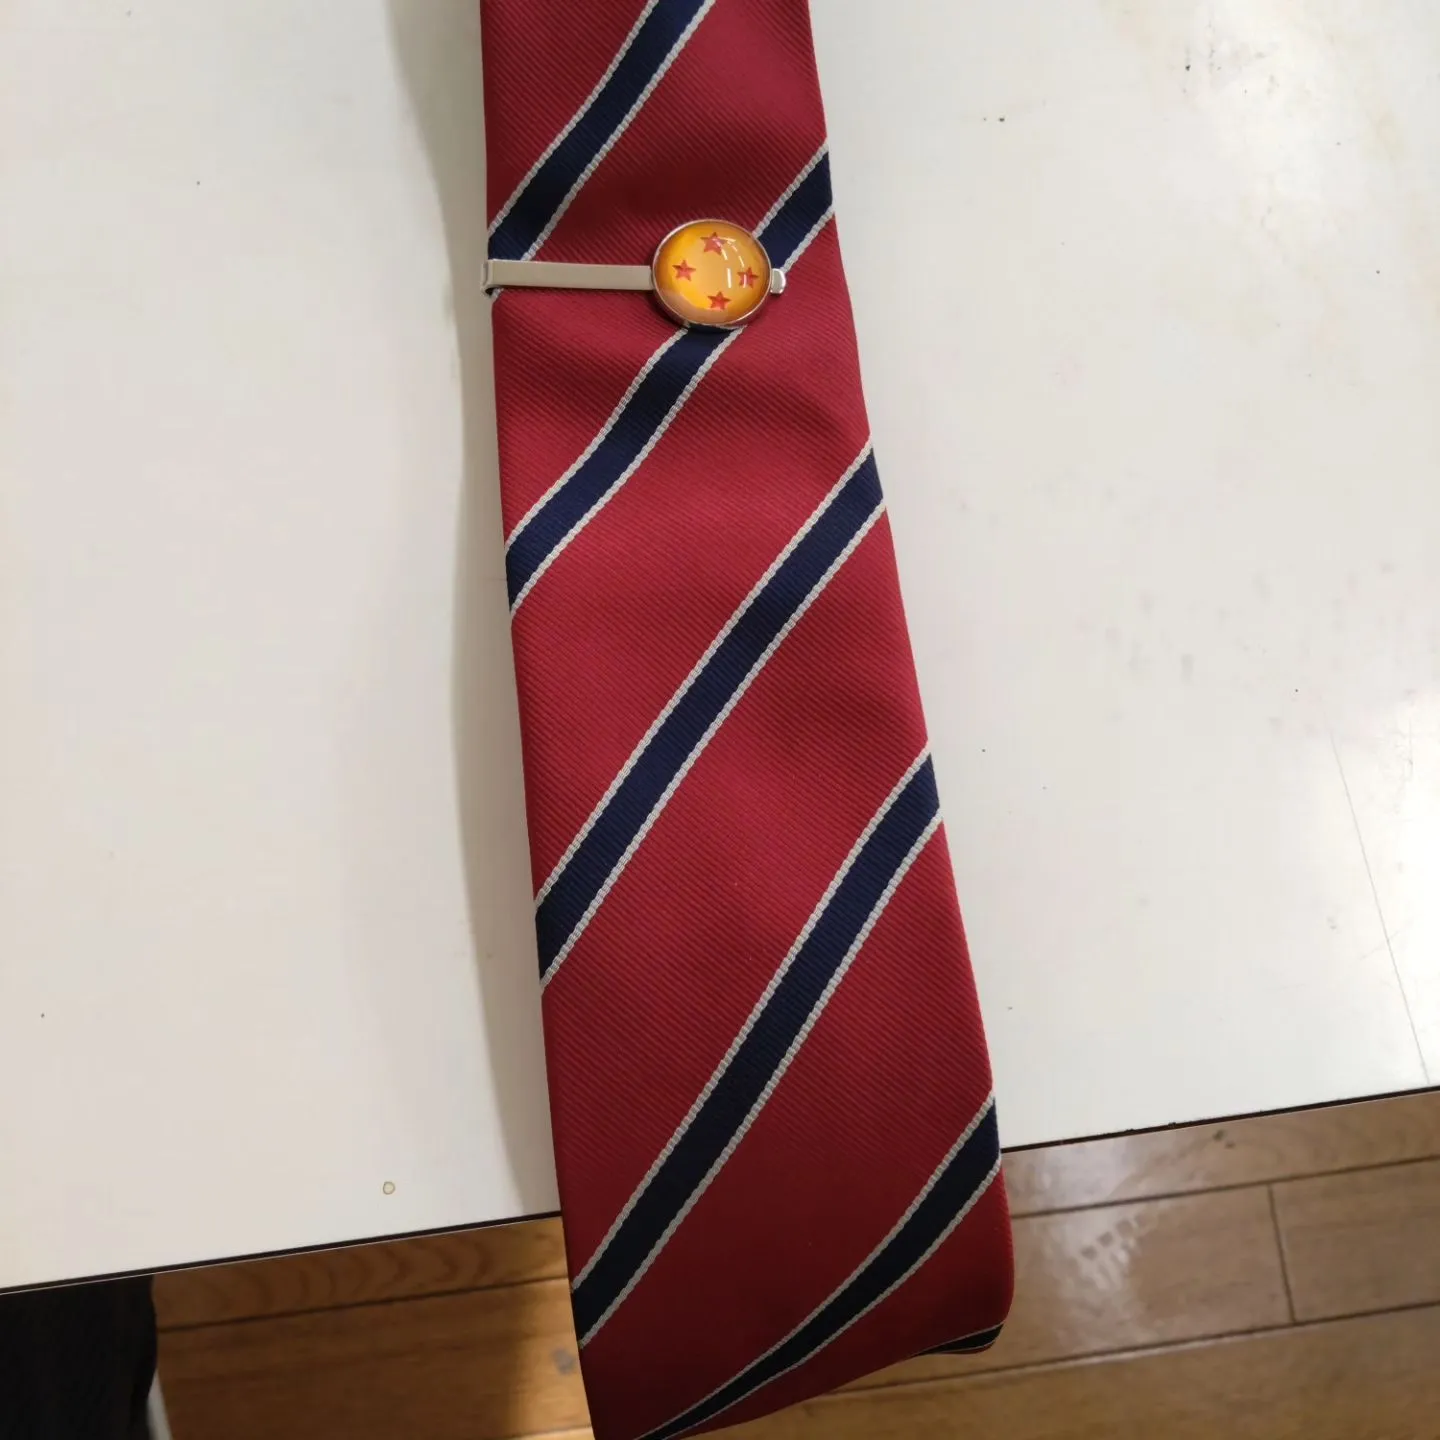 ネクタイを忘れたときに着ける緊急用のネクタイ